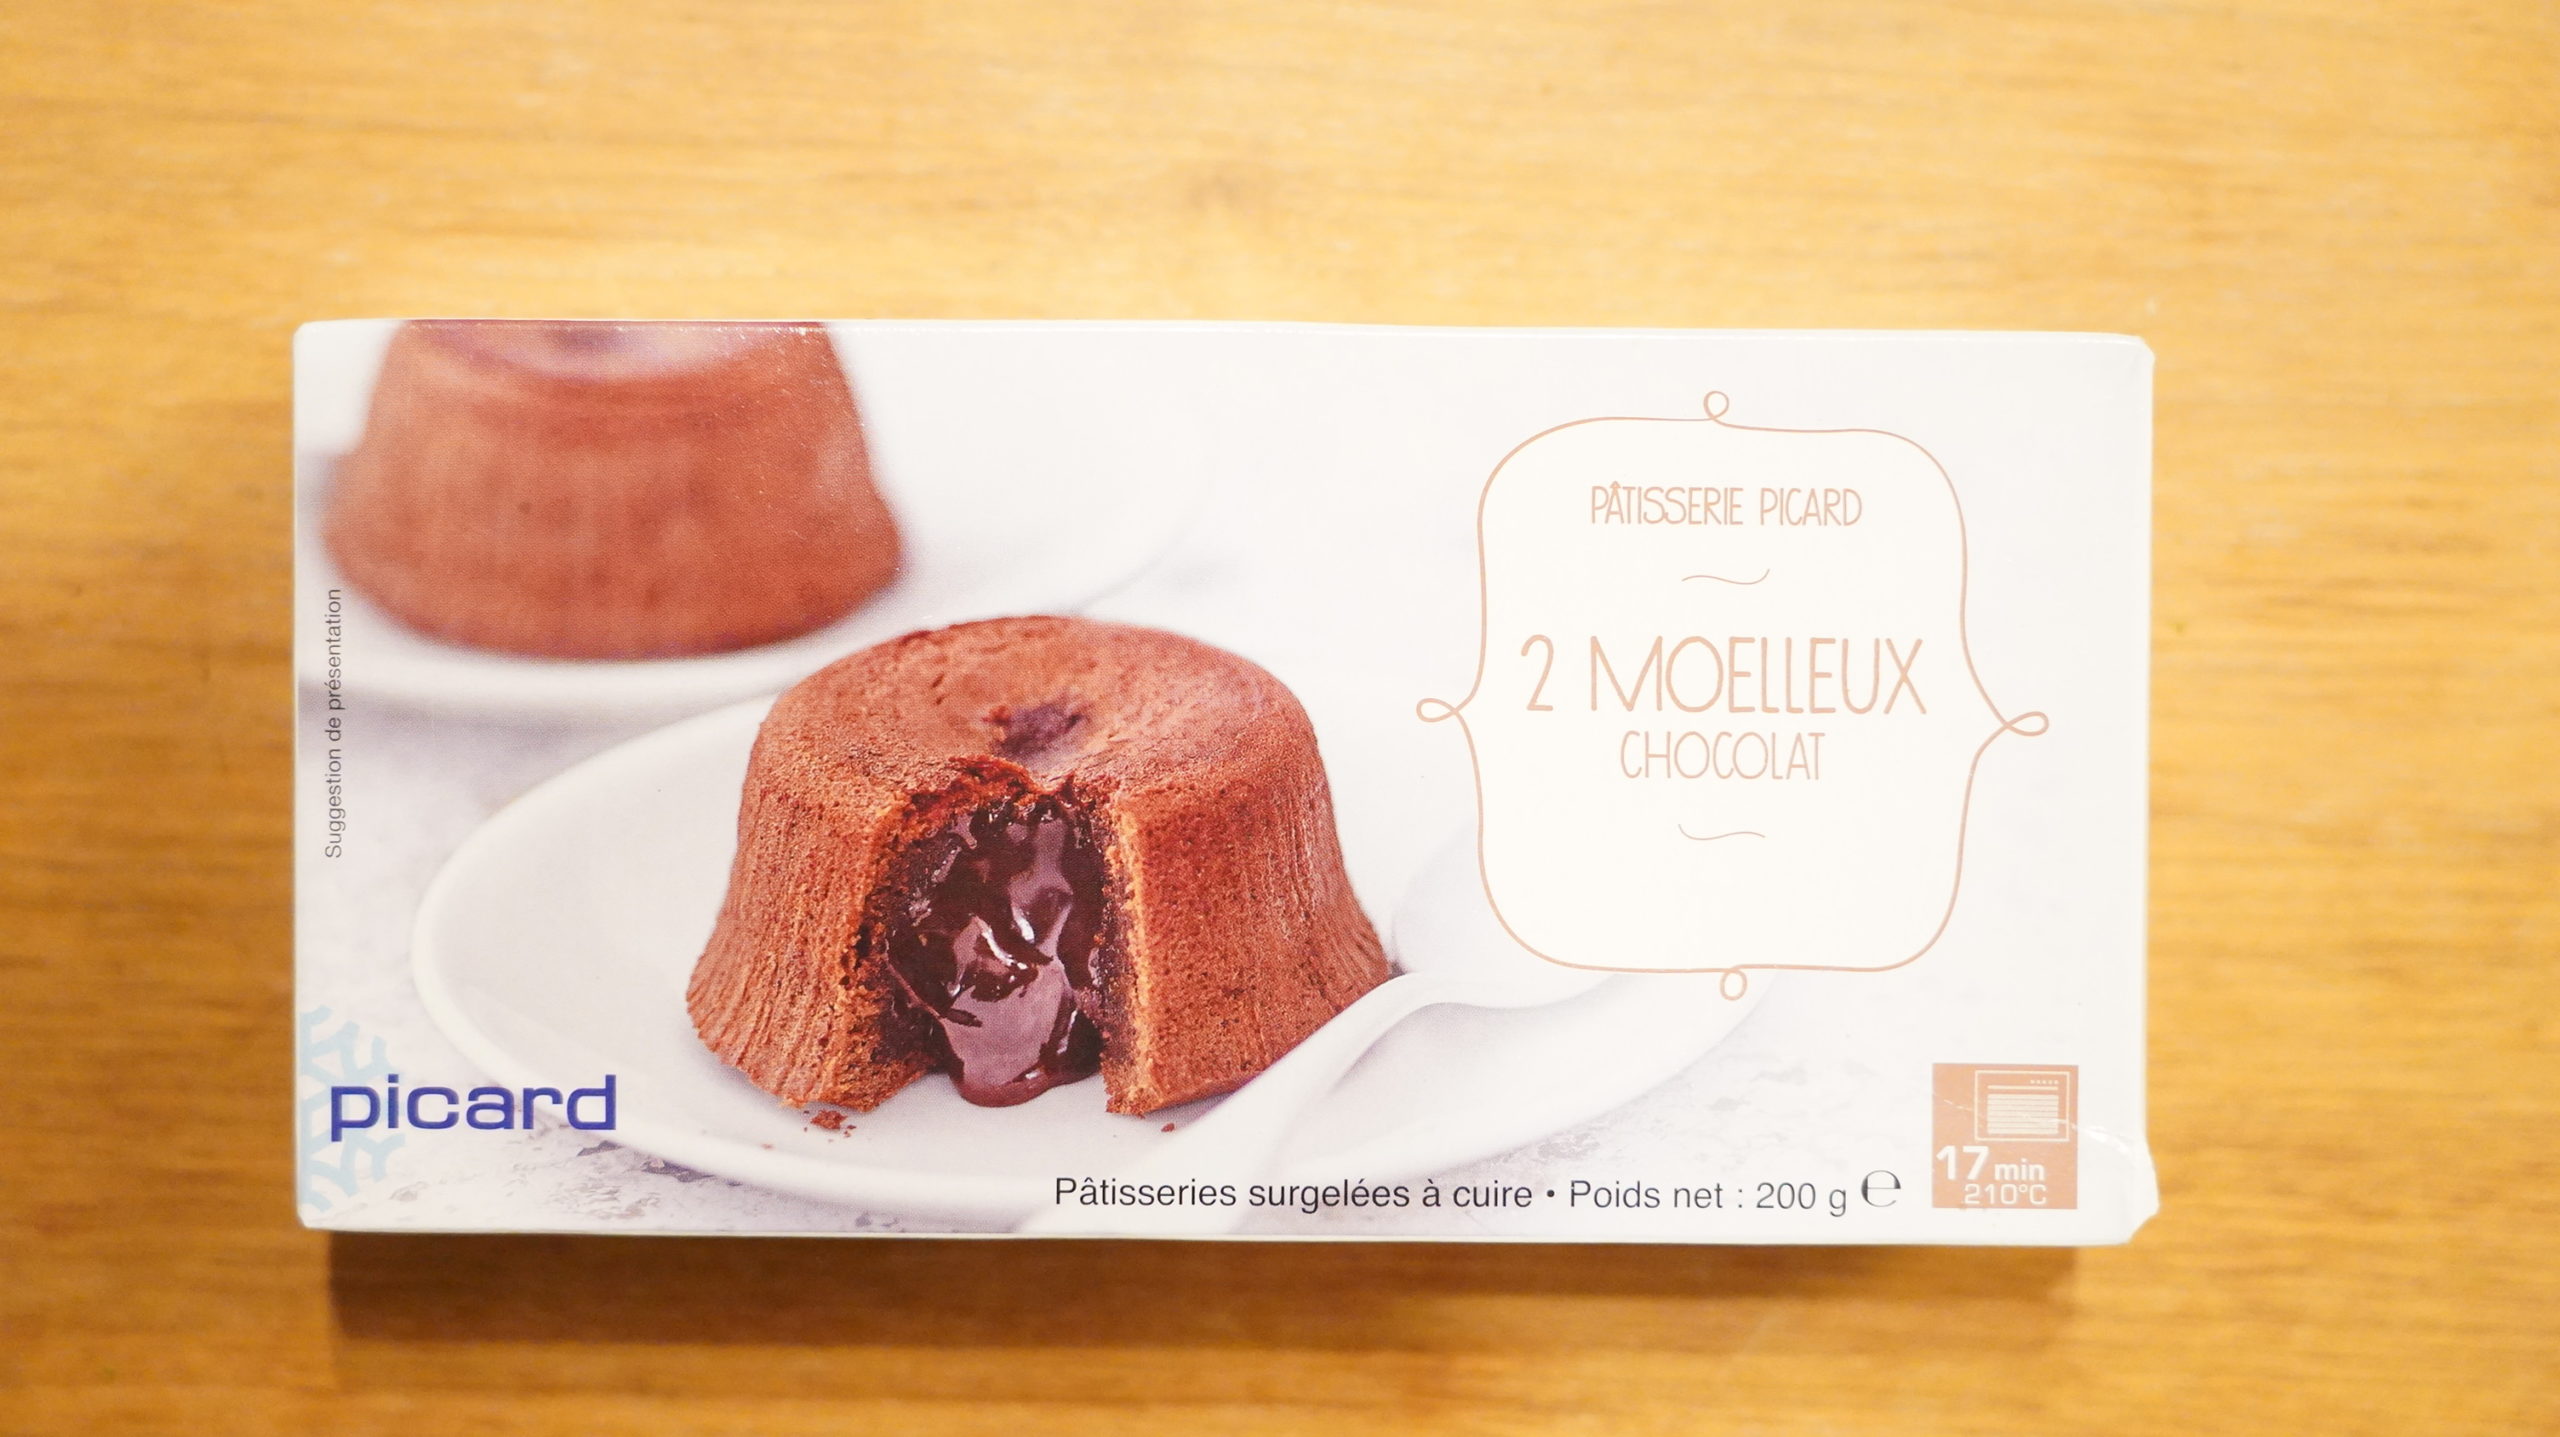 ピカールの冷凍食品「モアローショコラ」の写真